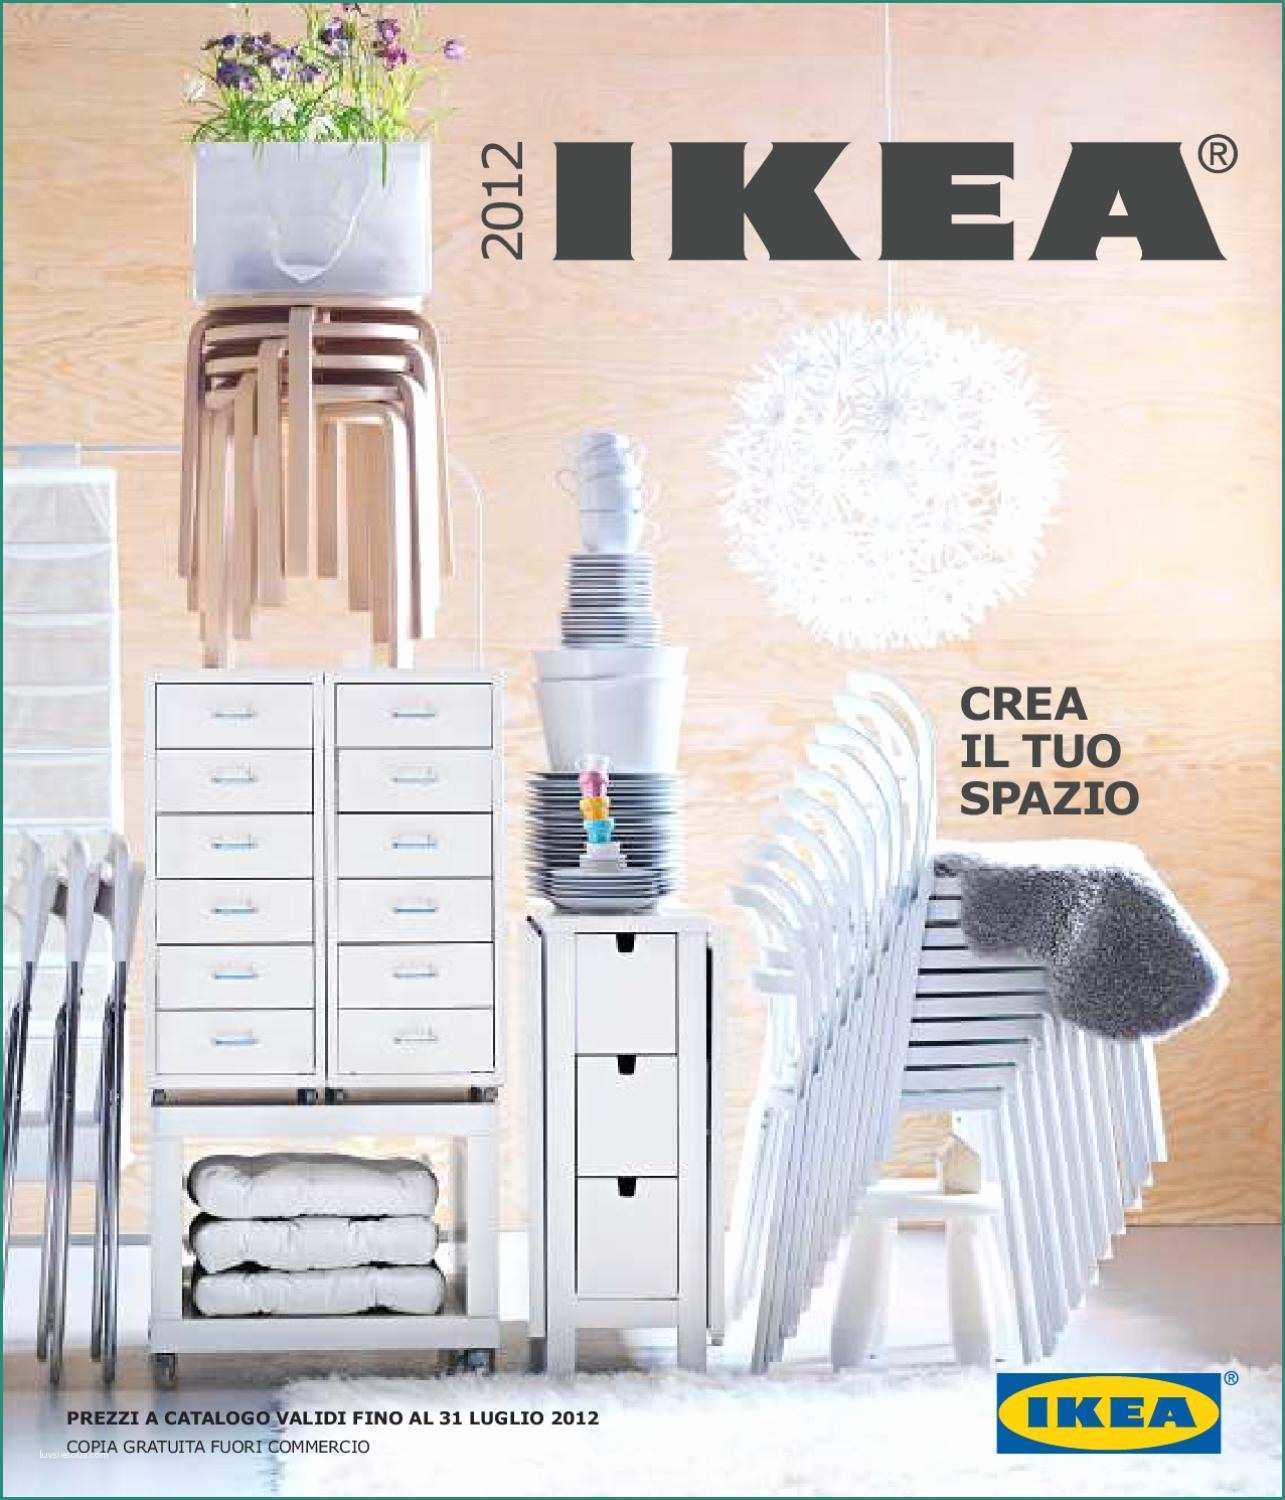 Composizioni Floreali In Vasi Di Vetro Alti E Catalogo Ikea Italia 2012 by Catalogopromozioni issuu